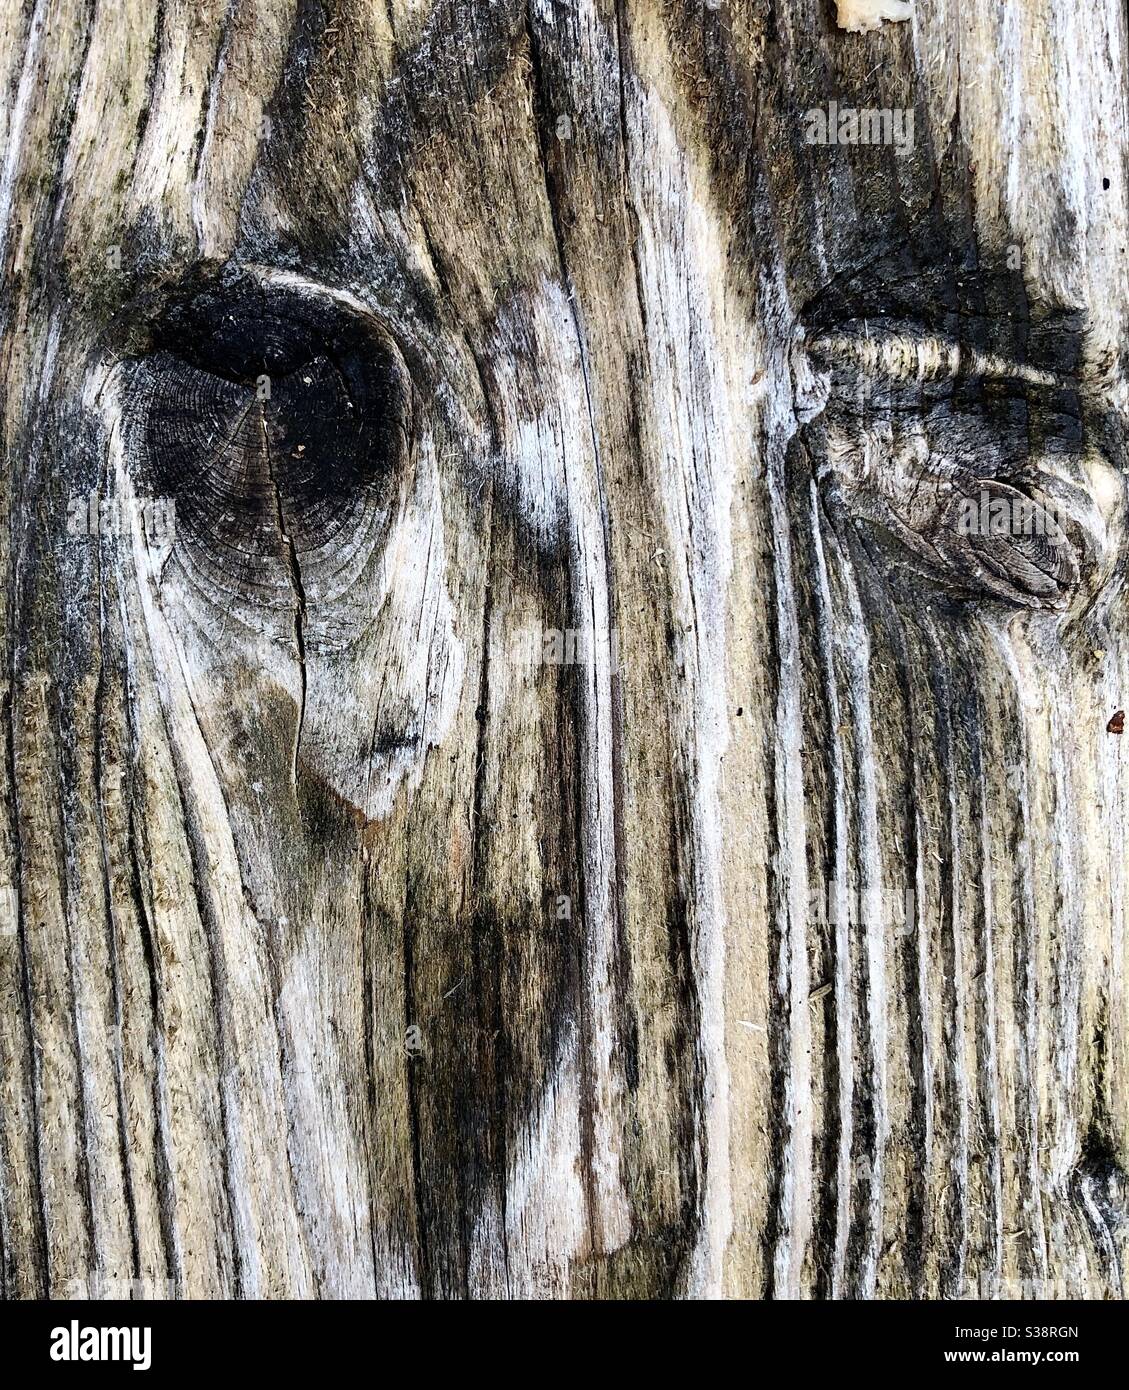 Verwitterte Holzmaserung und Äste, die dem Gesicht eines Tieres ähneln. Stockfoto